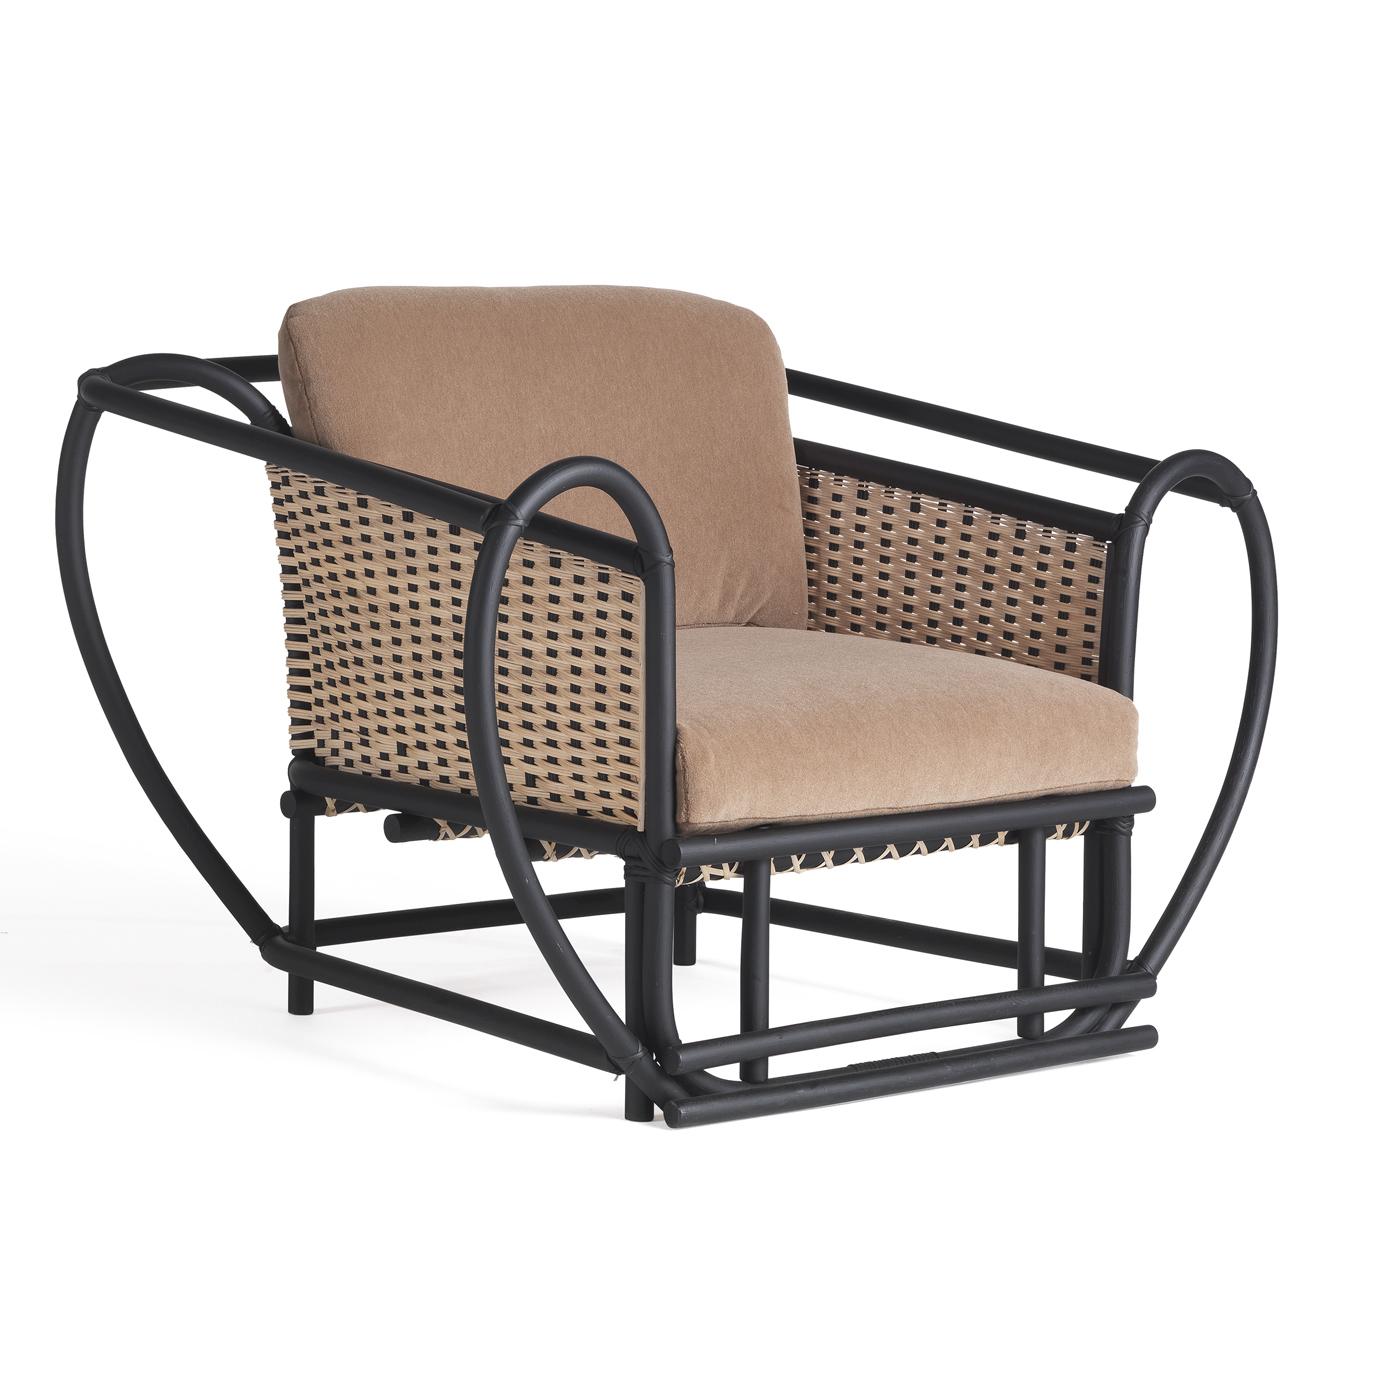 Ein innovatives Design von einzigartiger Raffinesse. Dieser atemberaubende Sessel zeichnet sich durch eine großartige Struktur aus schwarzem Schilfrohr aus, die den bequemen Sitz in einer fesselnden, geschwungenen Silhouette umschließt. Der Sitz ist